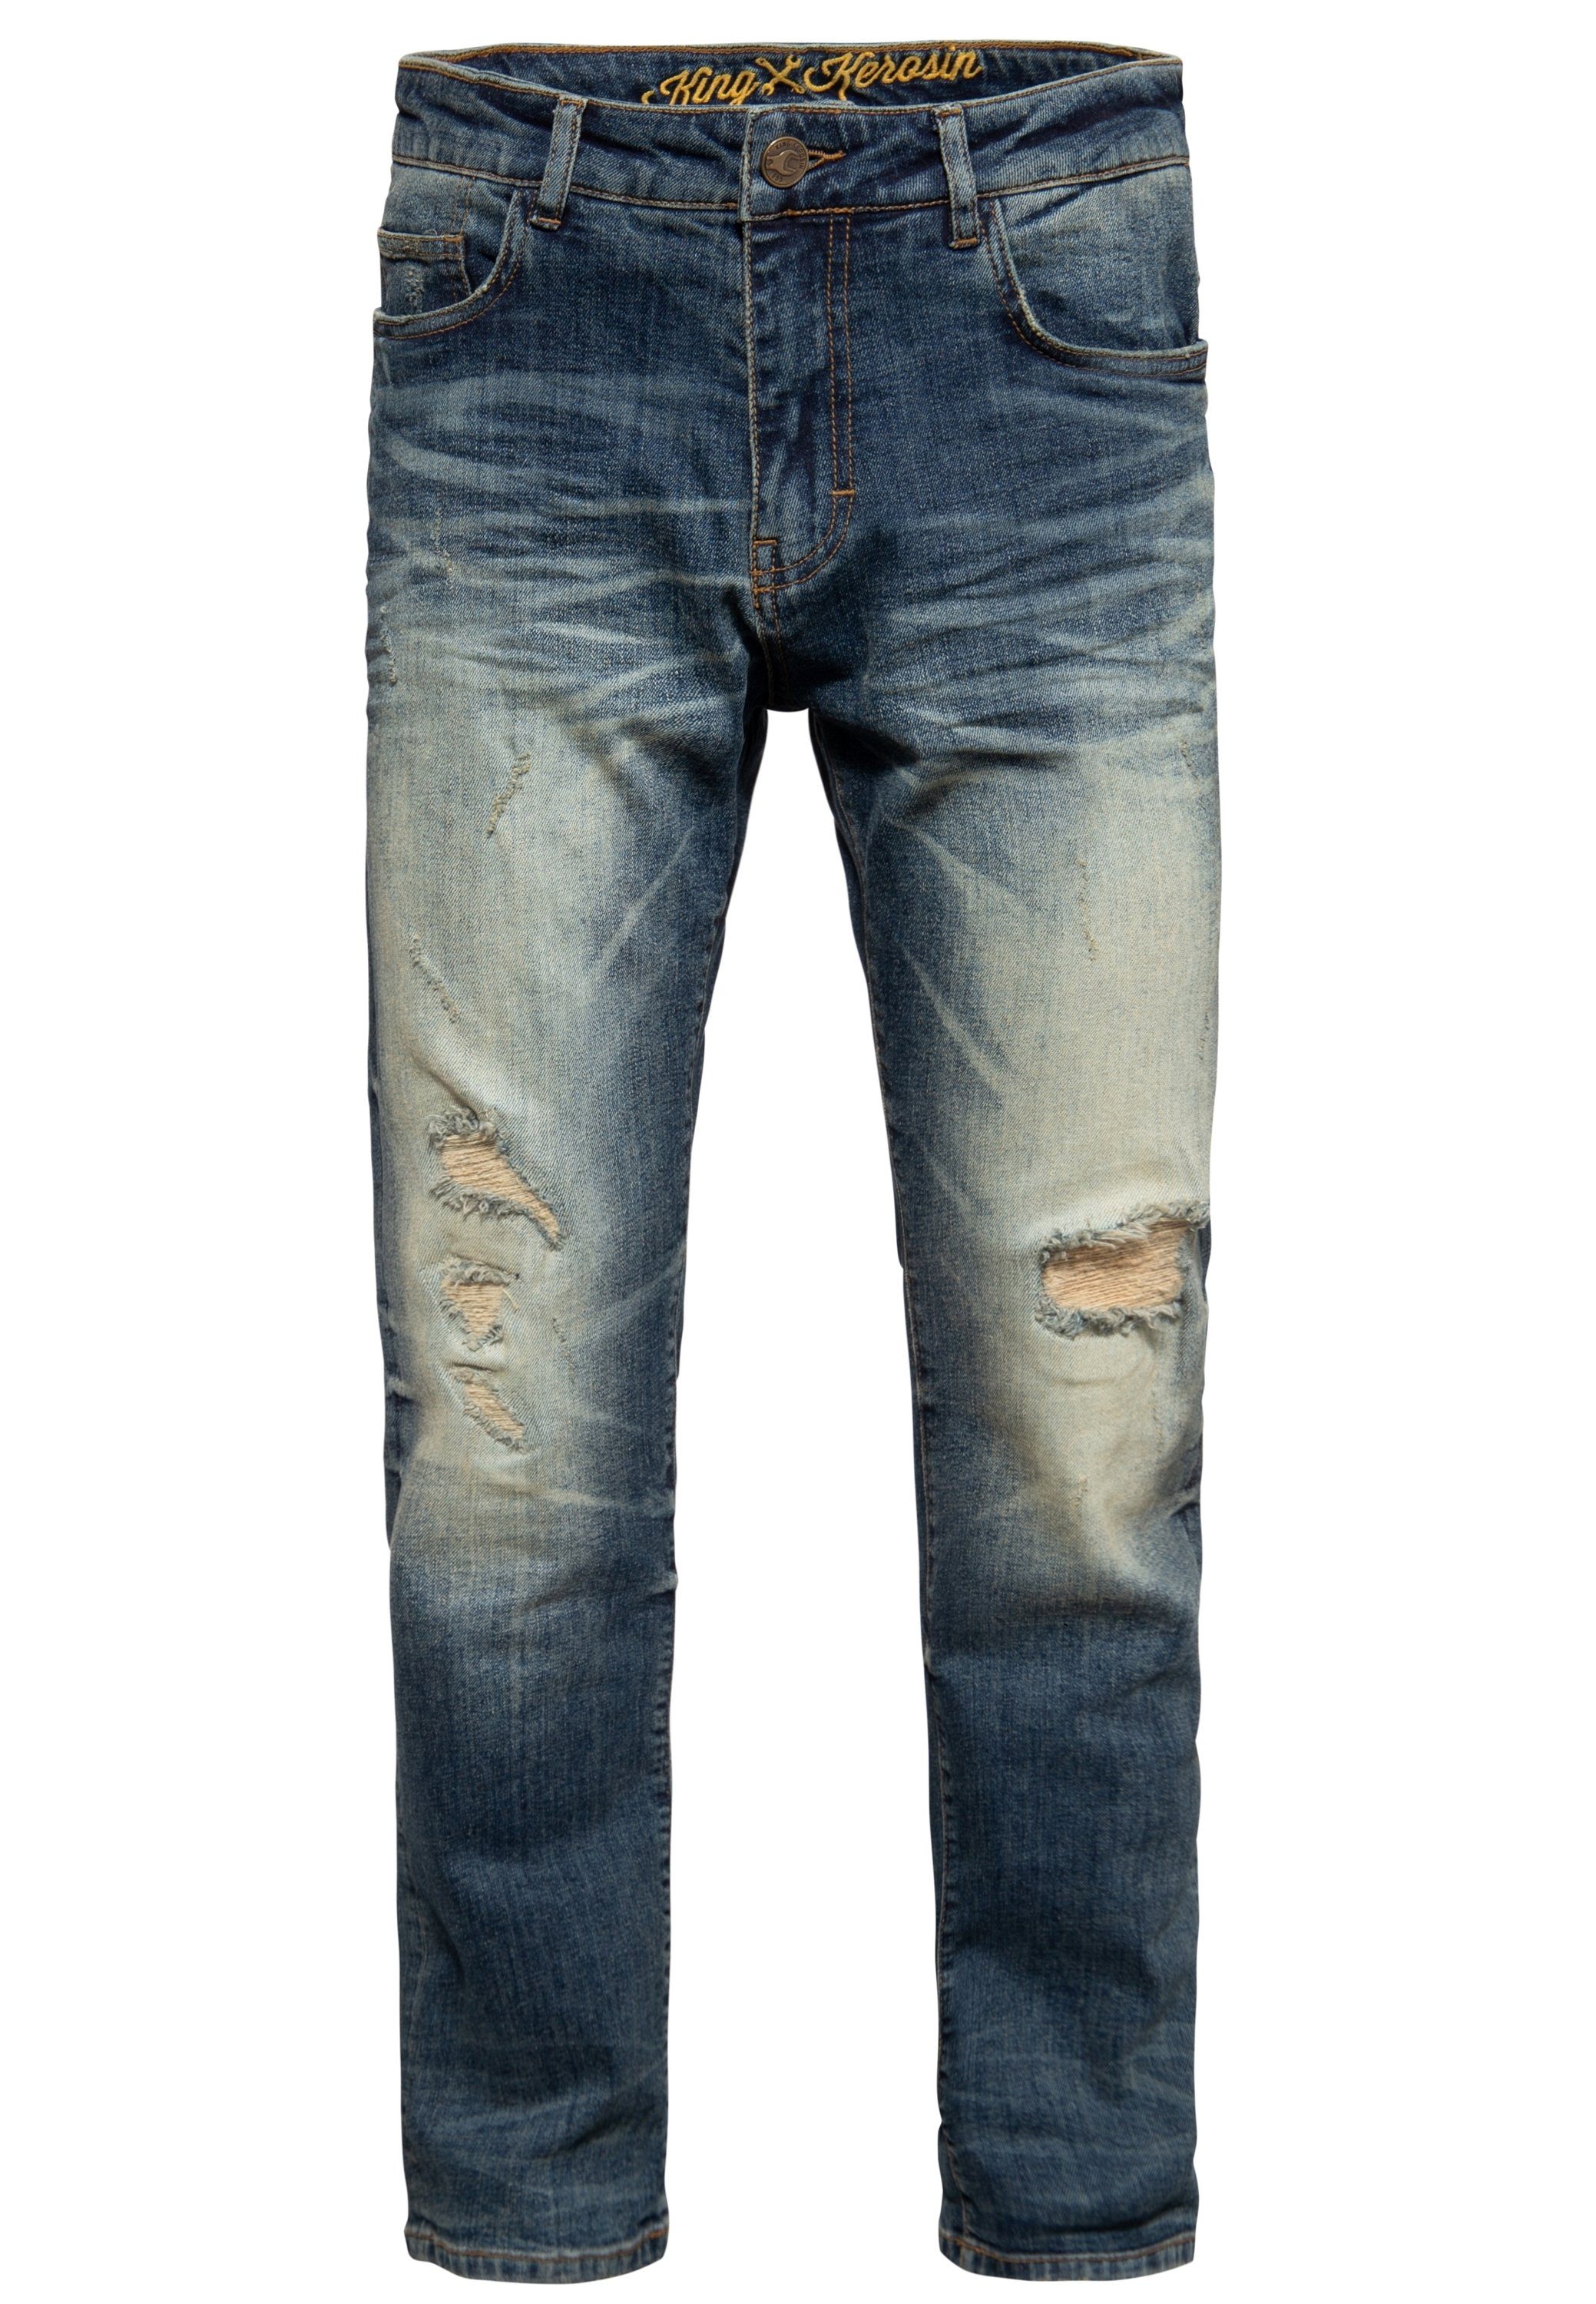 Wash Robin Jeans Vintage Wash KingKerosin Vintage Gerade